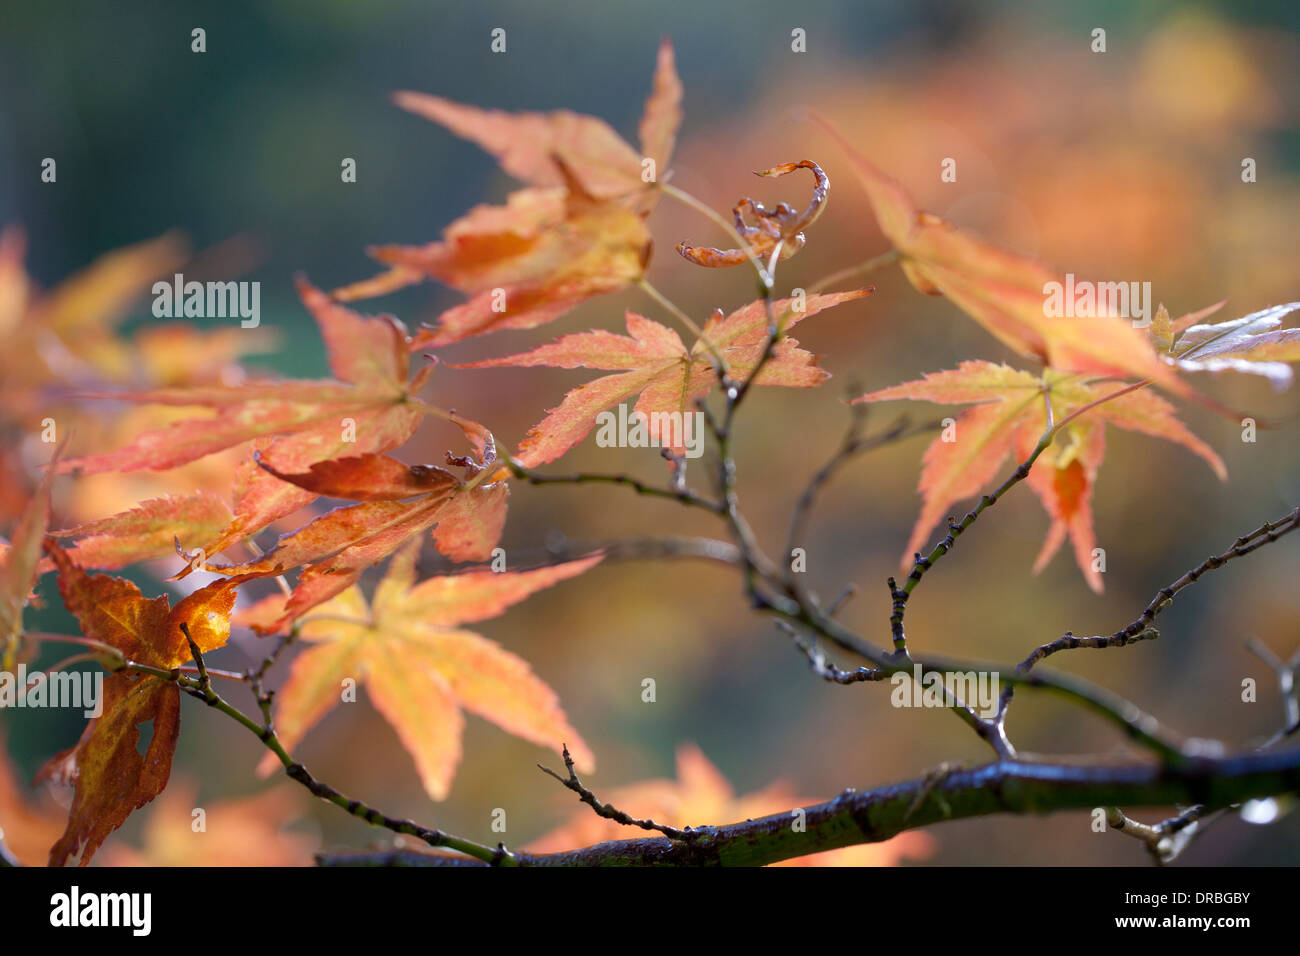 Blätter an einem japanischen Ahorn (Acer Palmatum) Baum im Herbst. Powys, Wales. November. Stockfoto